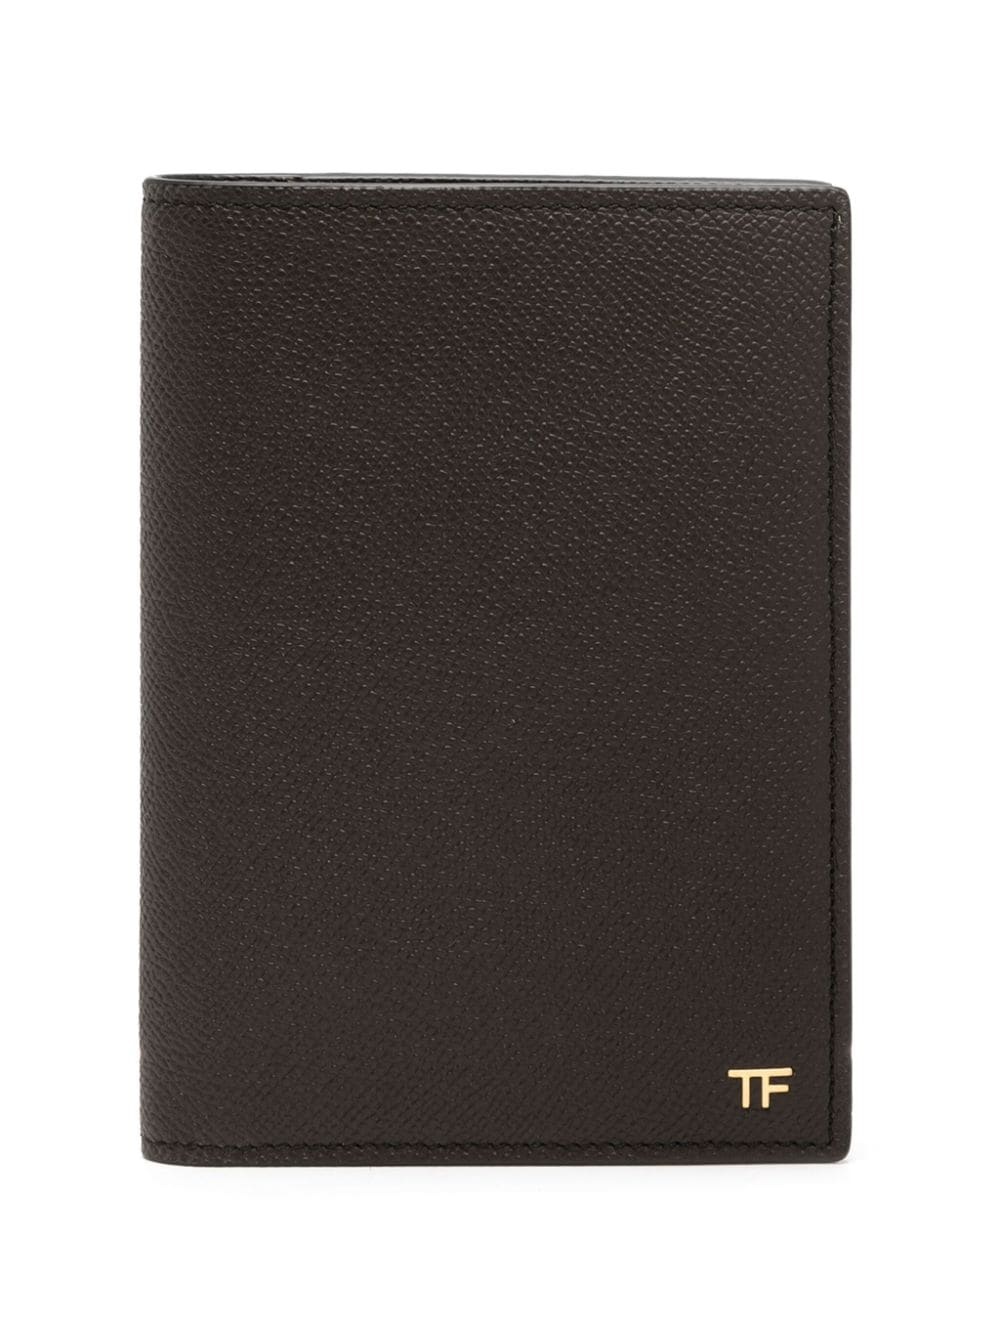 bi-fold leather wallet - 1